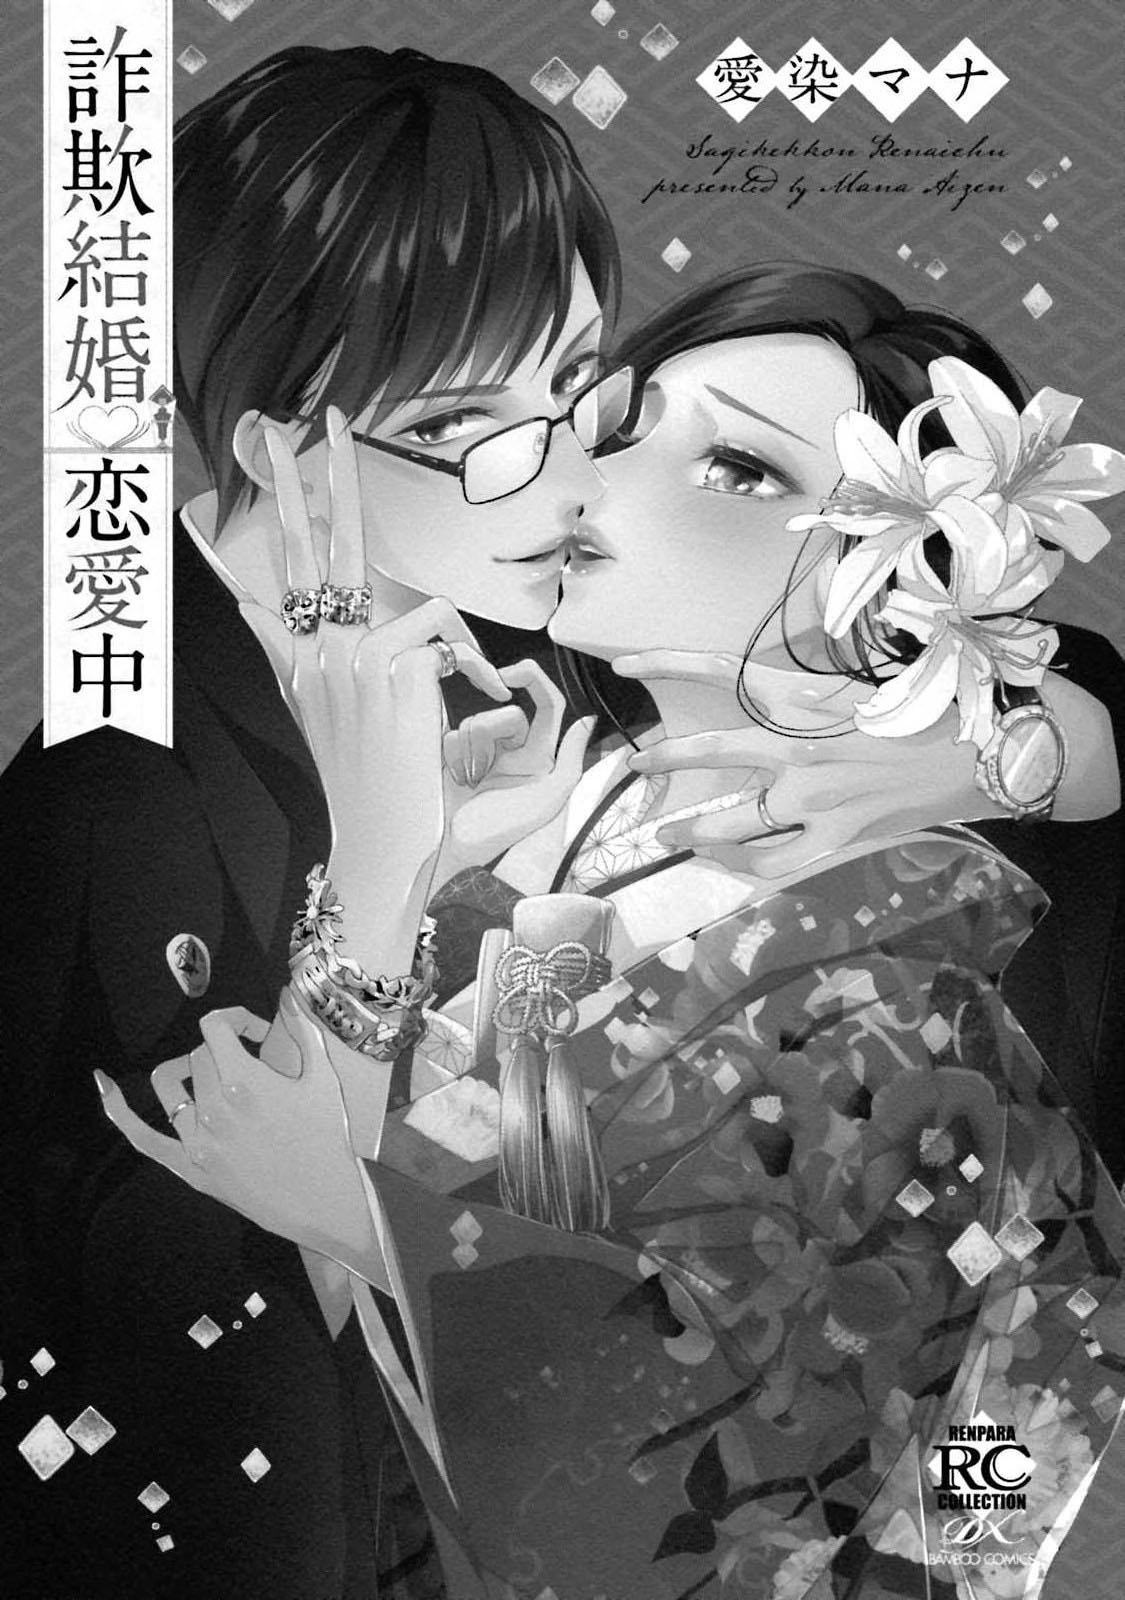 Free Sagi Kekkon Renaichuu 本篇+after story Couple Sex - Page 3